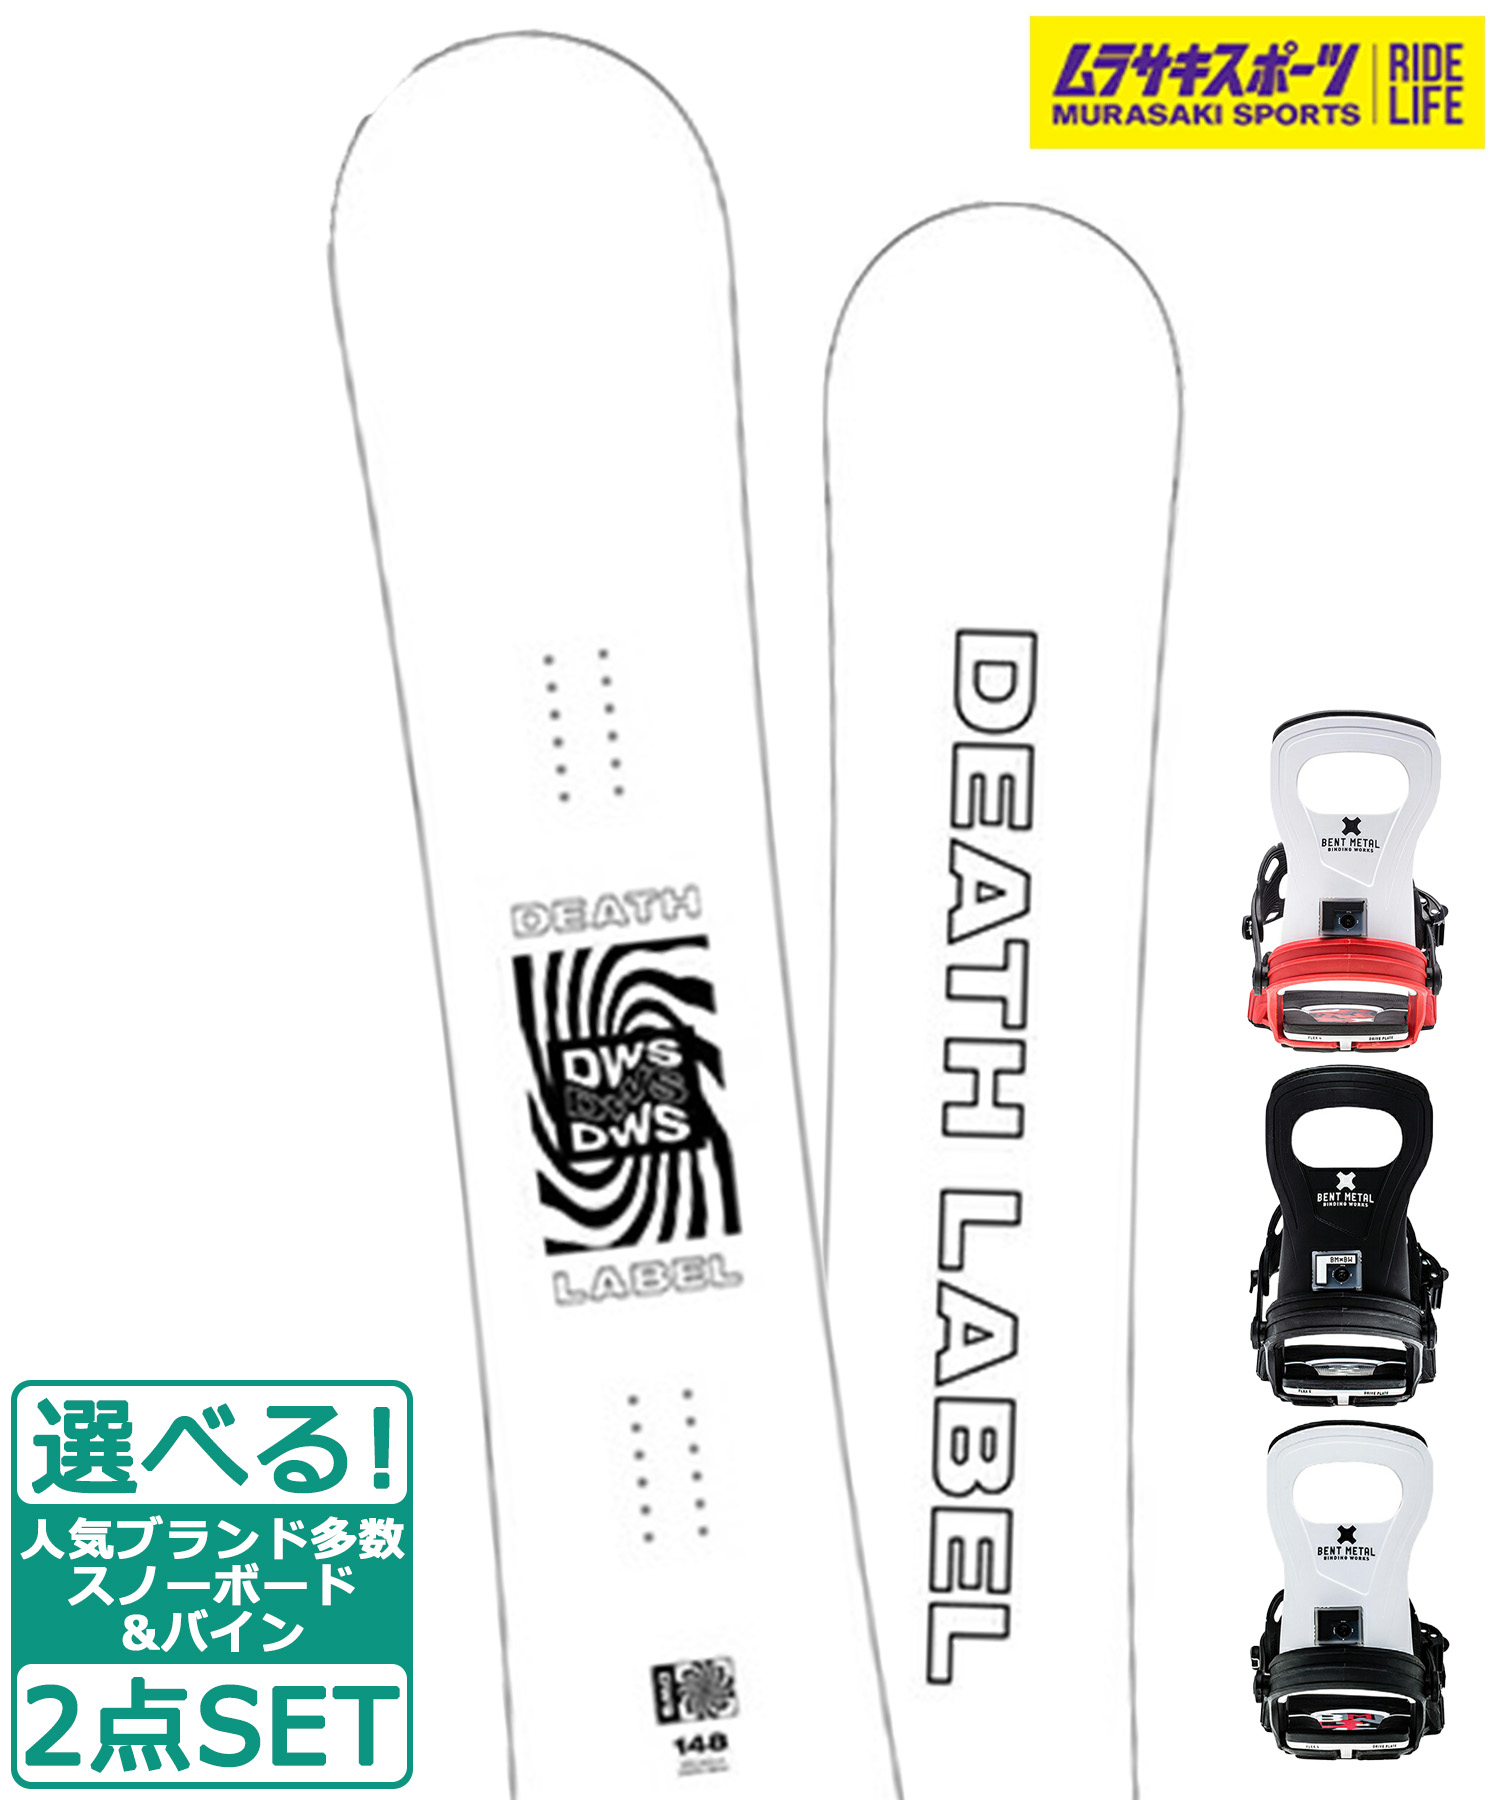 ジャパン公式オンライン デスレーベル板とバートンスノーボードバッグ